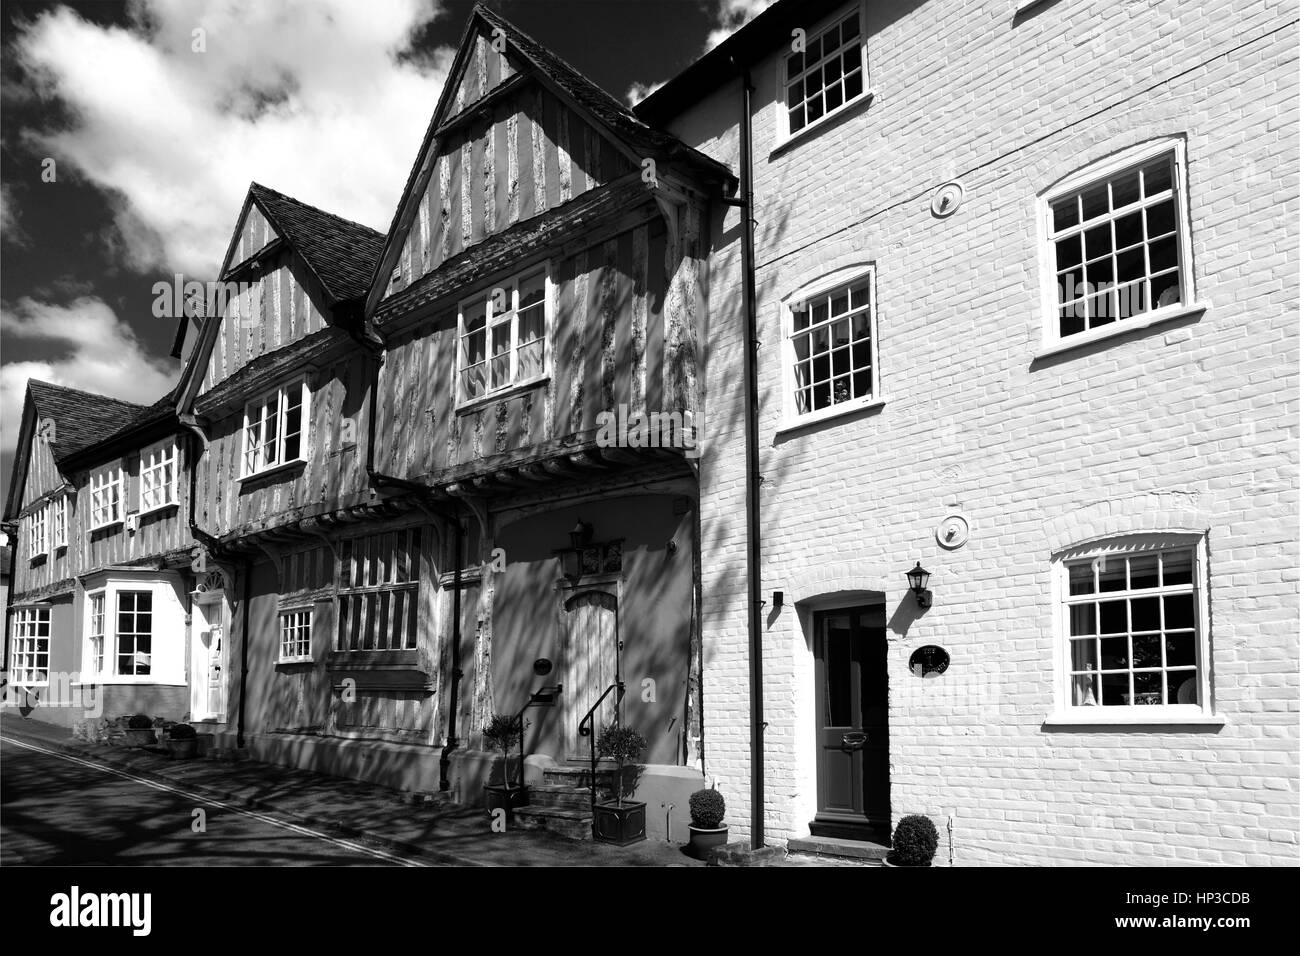 Sommer, August, September, bunten Fachwerk erbaute reetgedeckte Cottages, lavenham Dorf, Suffolk County, England, Großbritannien. Stockfoto